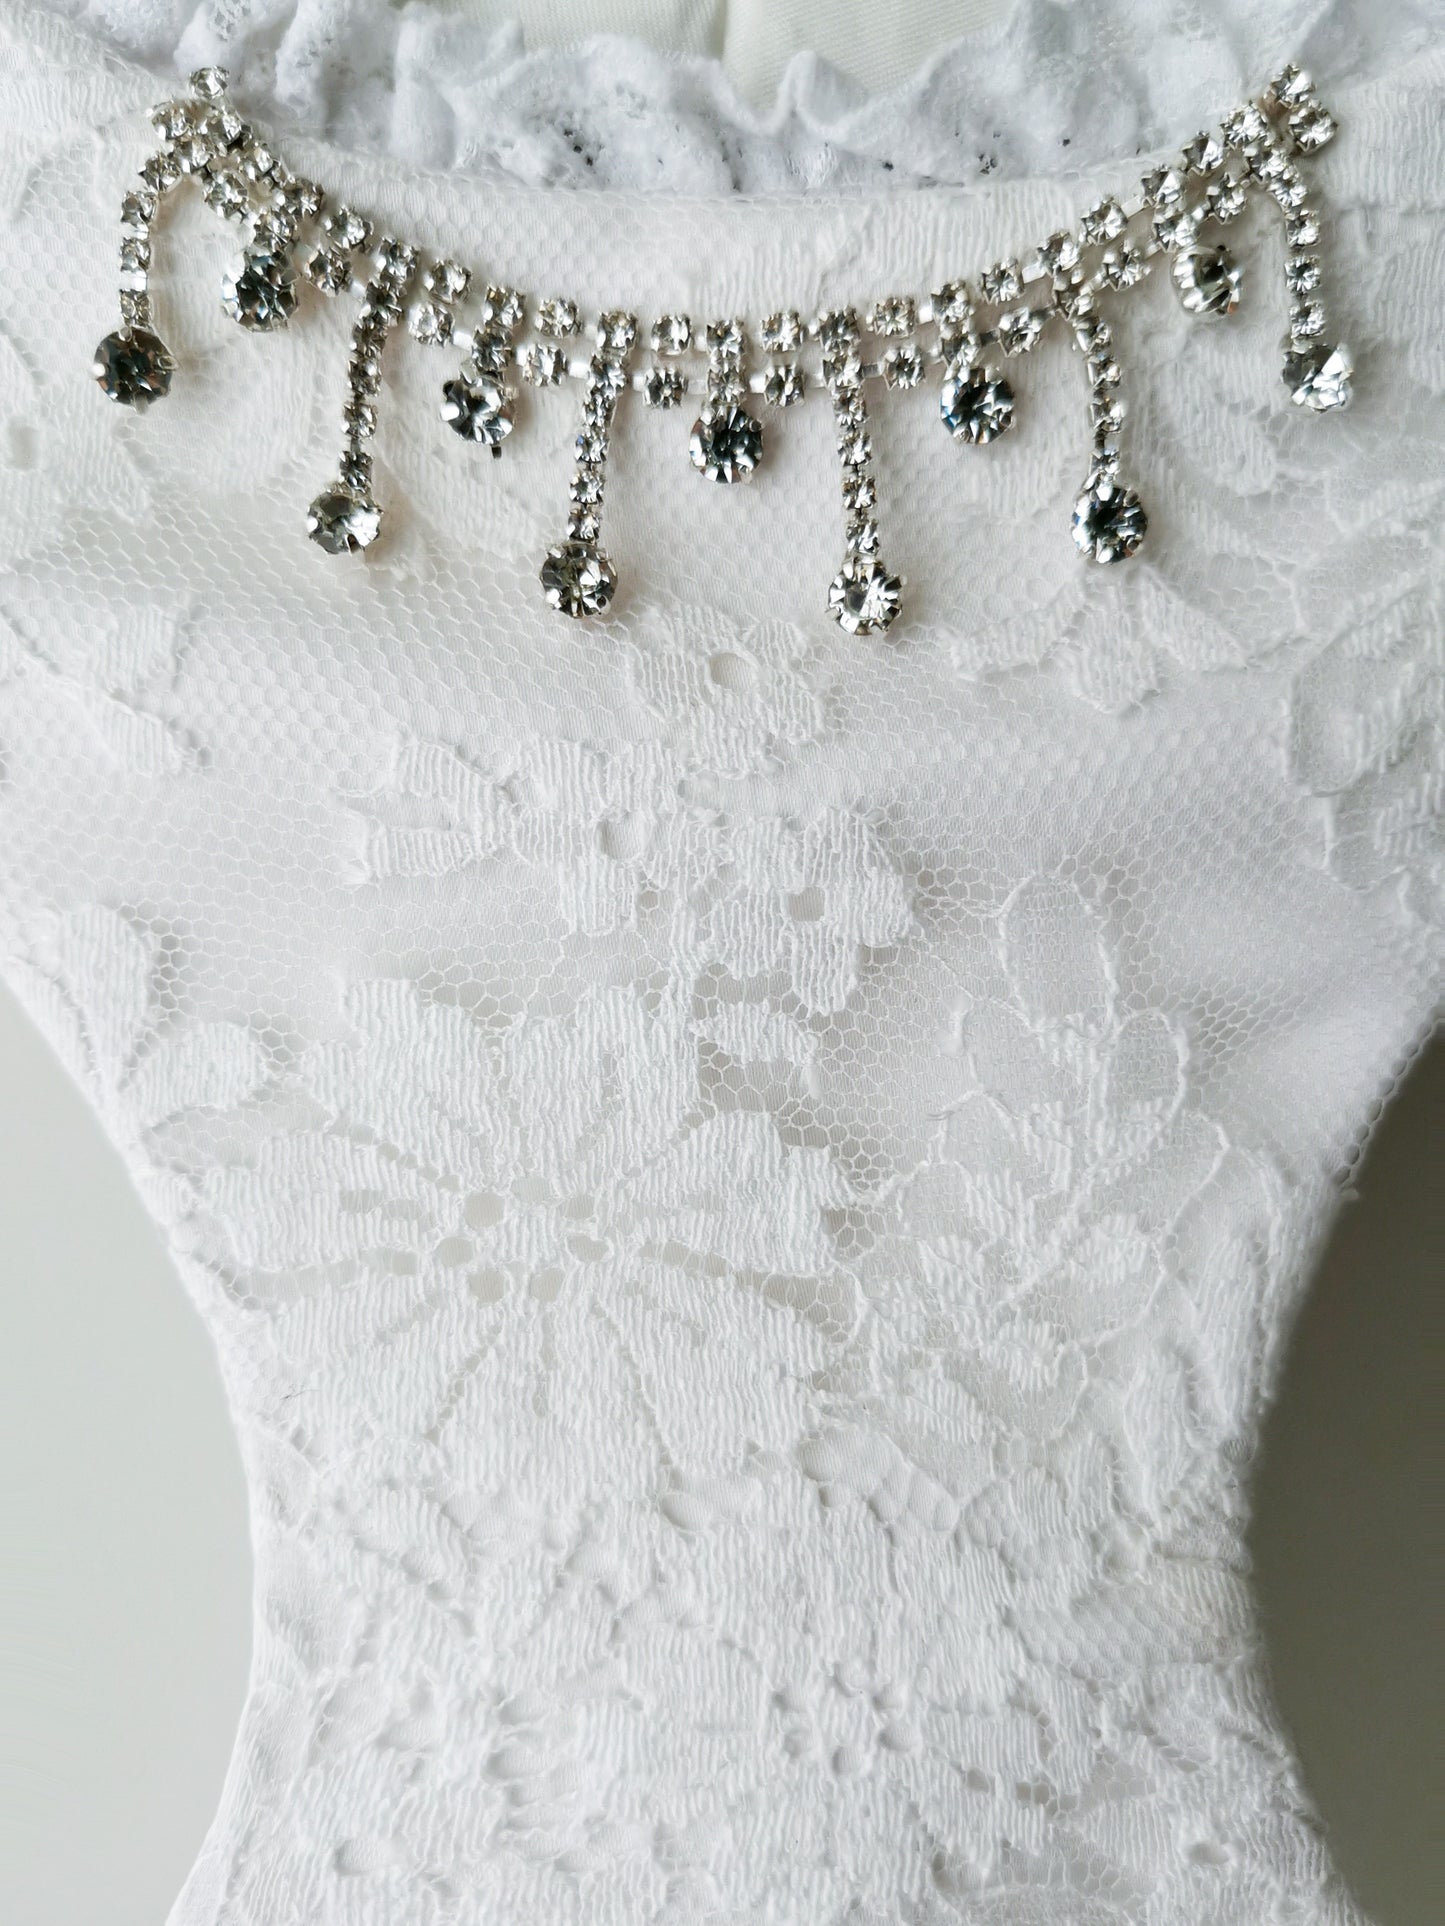 Lace harness with Swarovski